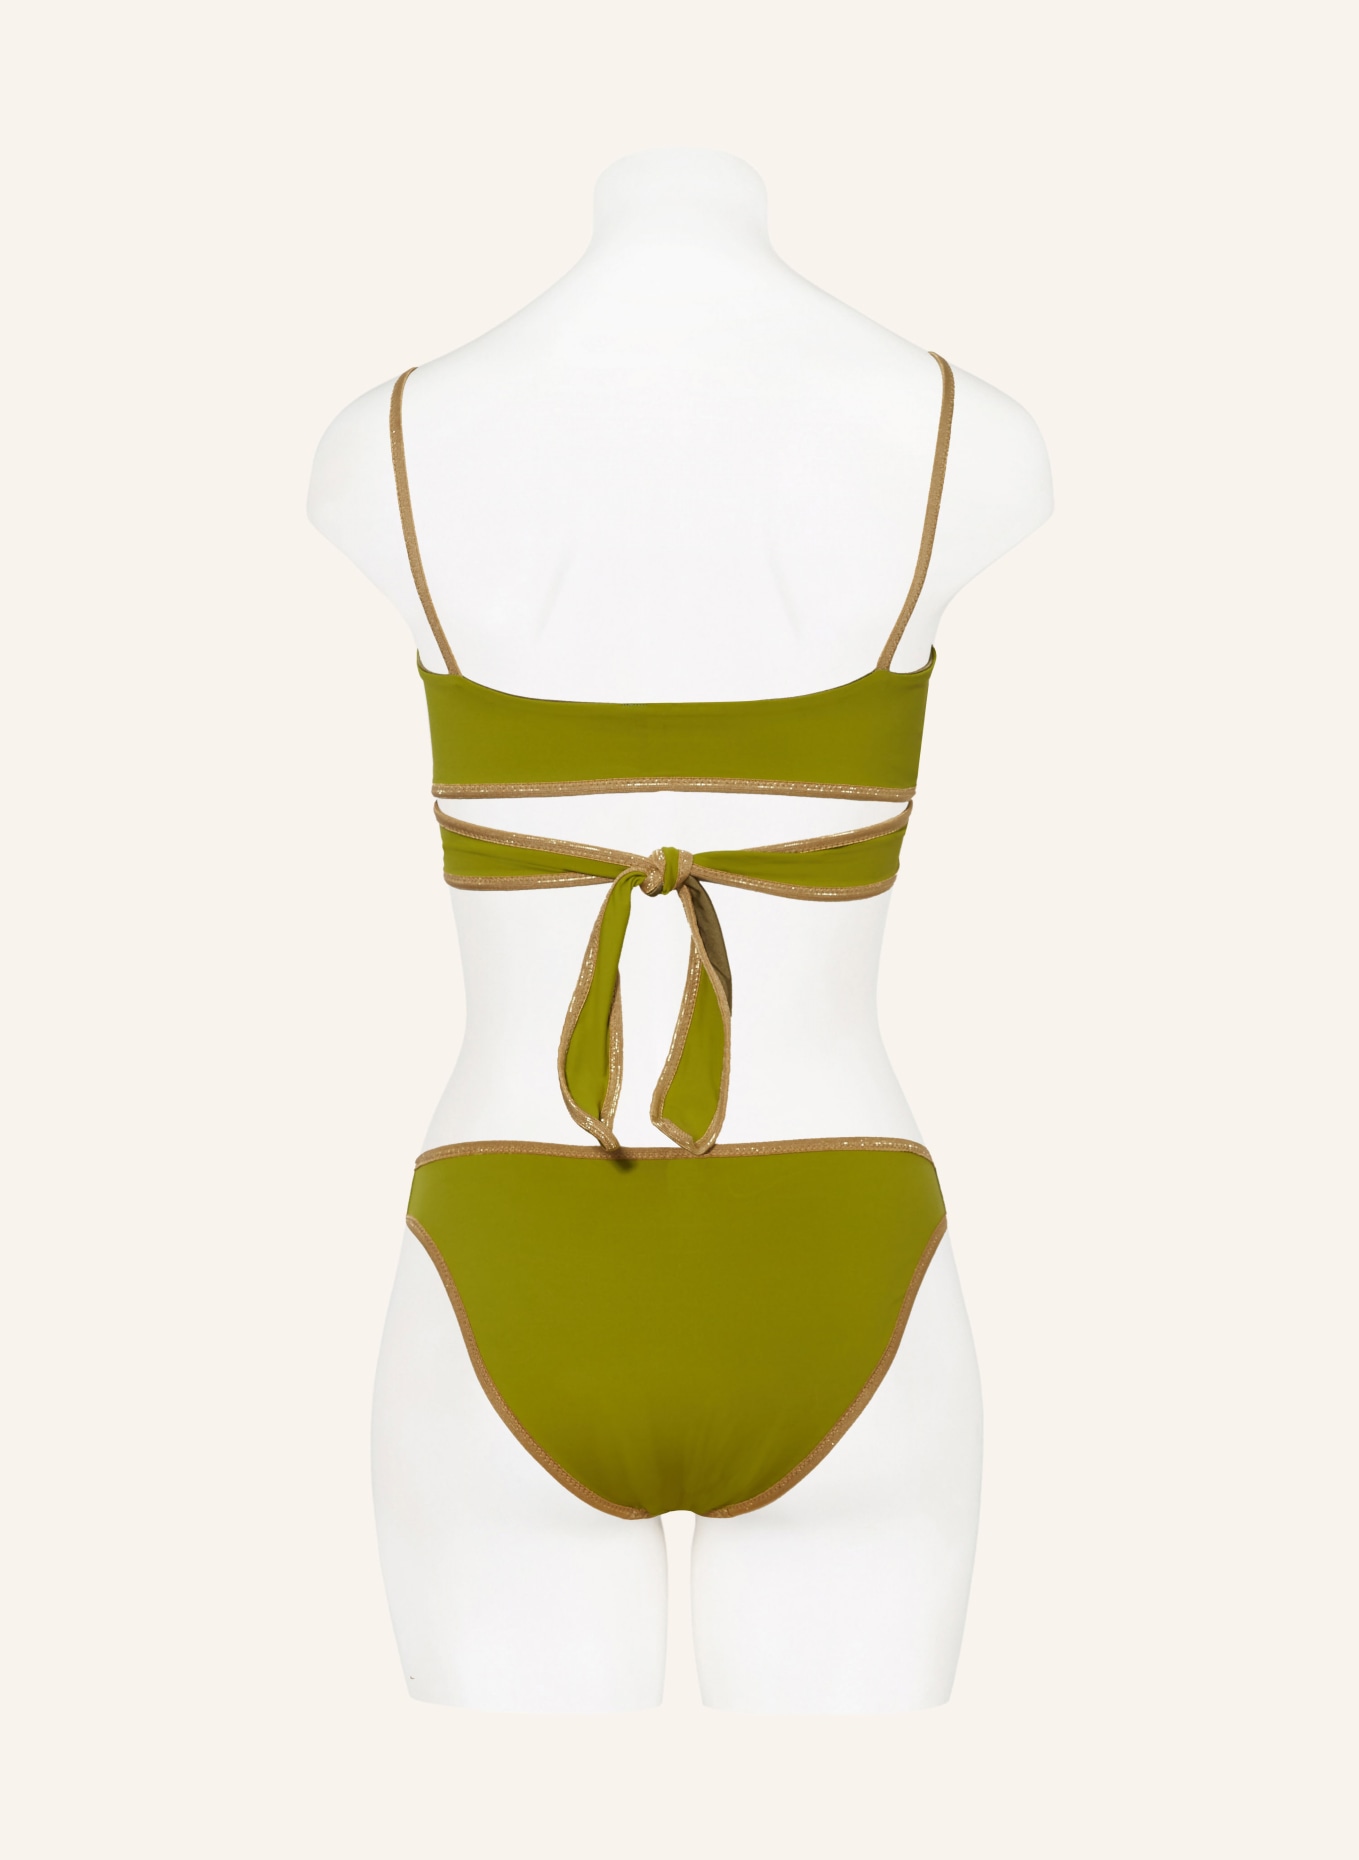 MYMARINI Bralette bikini top SHINE reversible, Color: LIGHT GREEN/ OLIVE (Image 5)